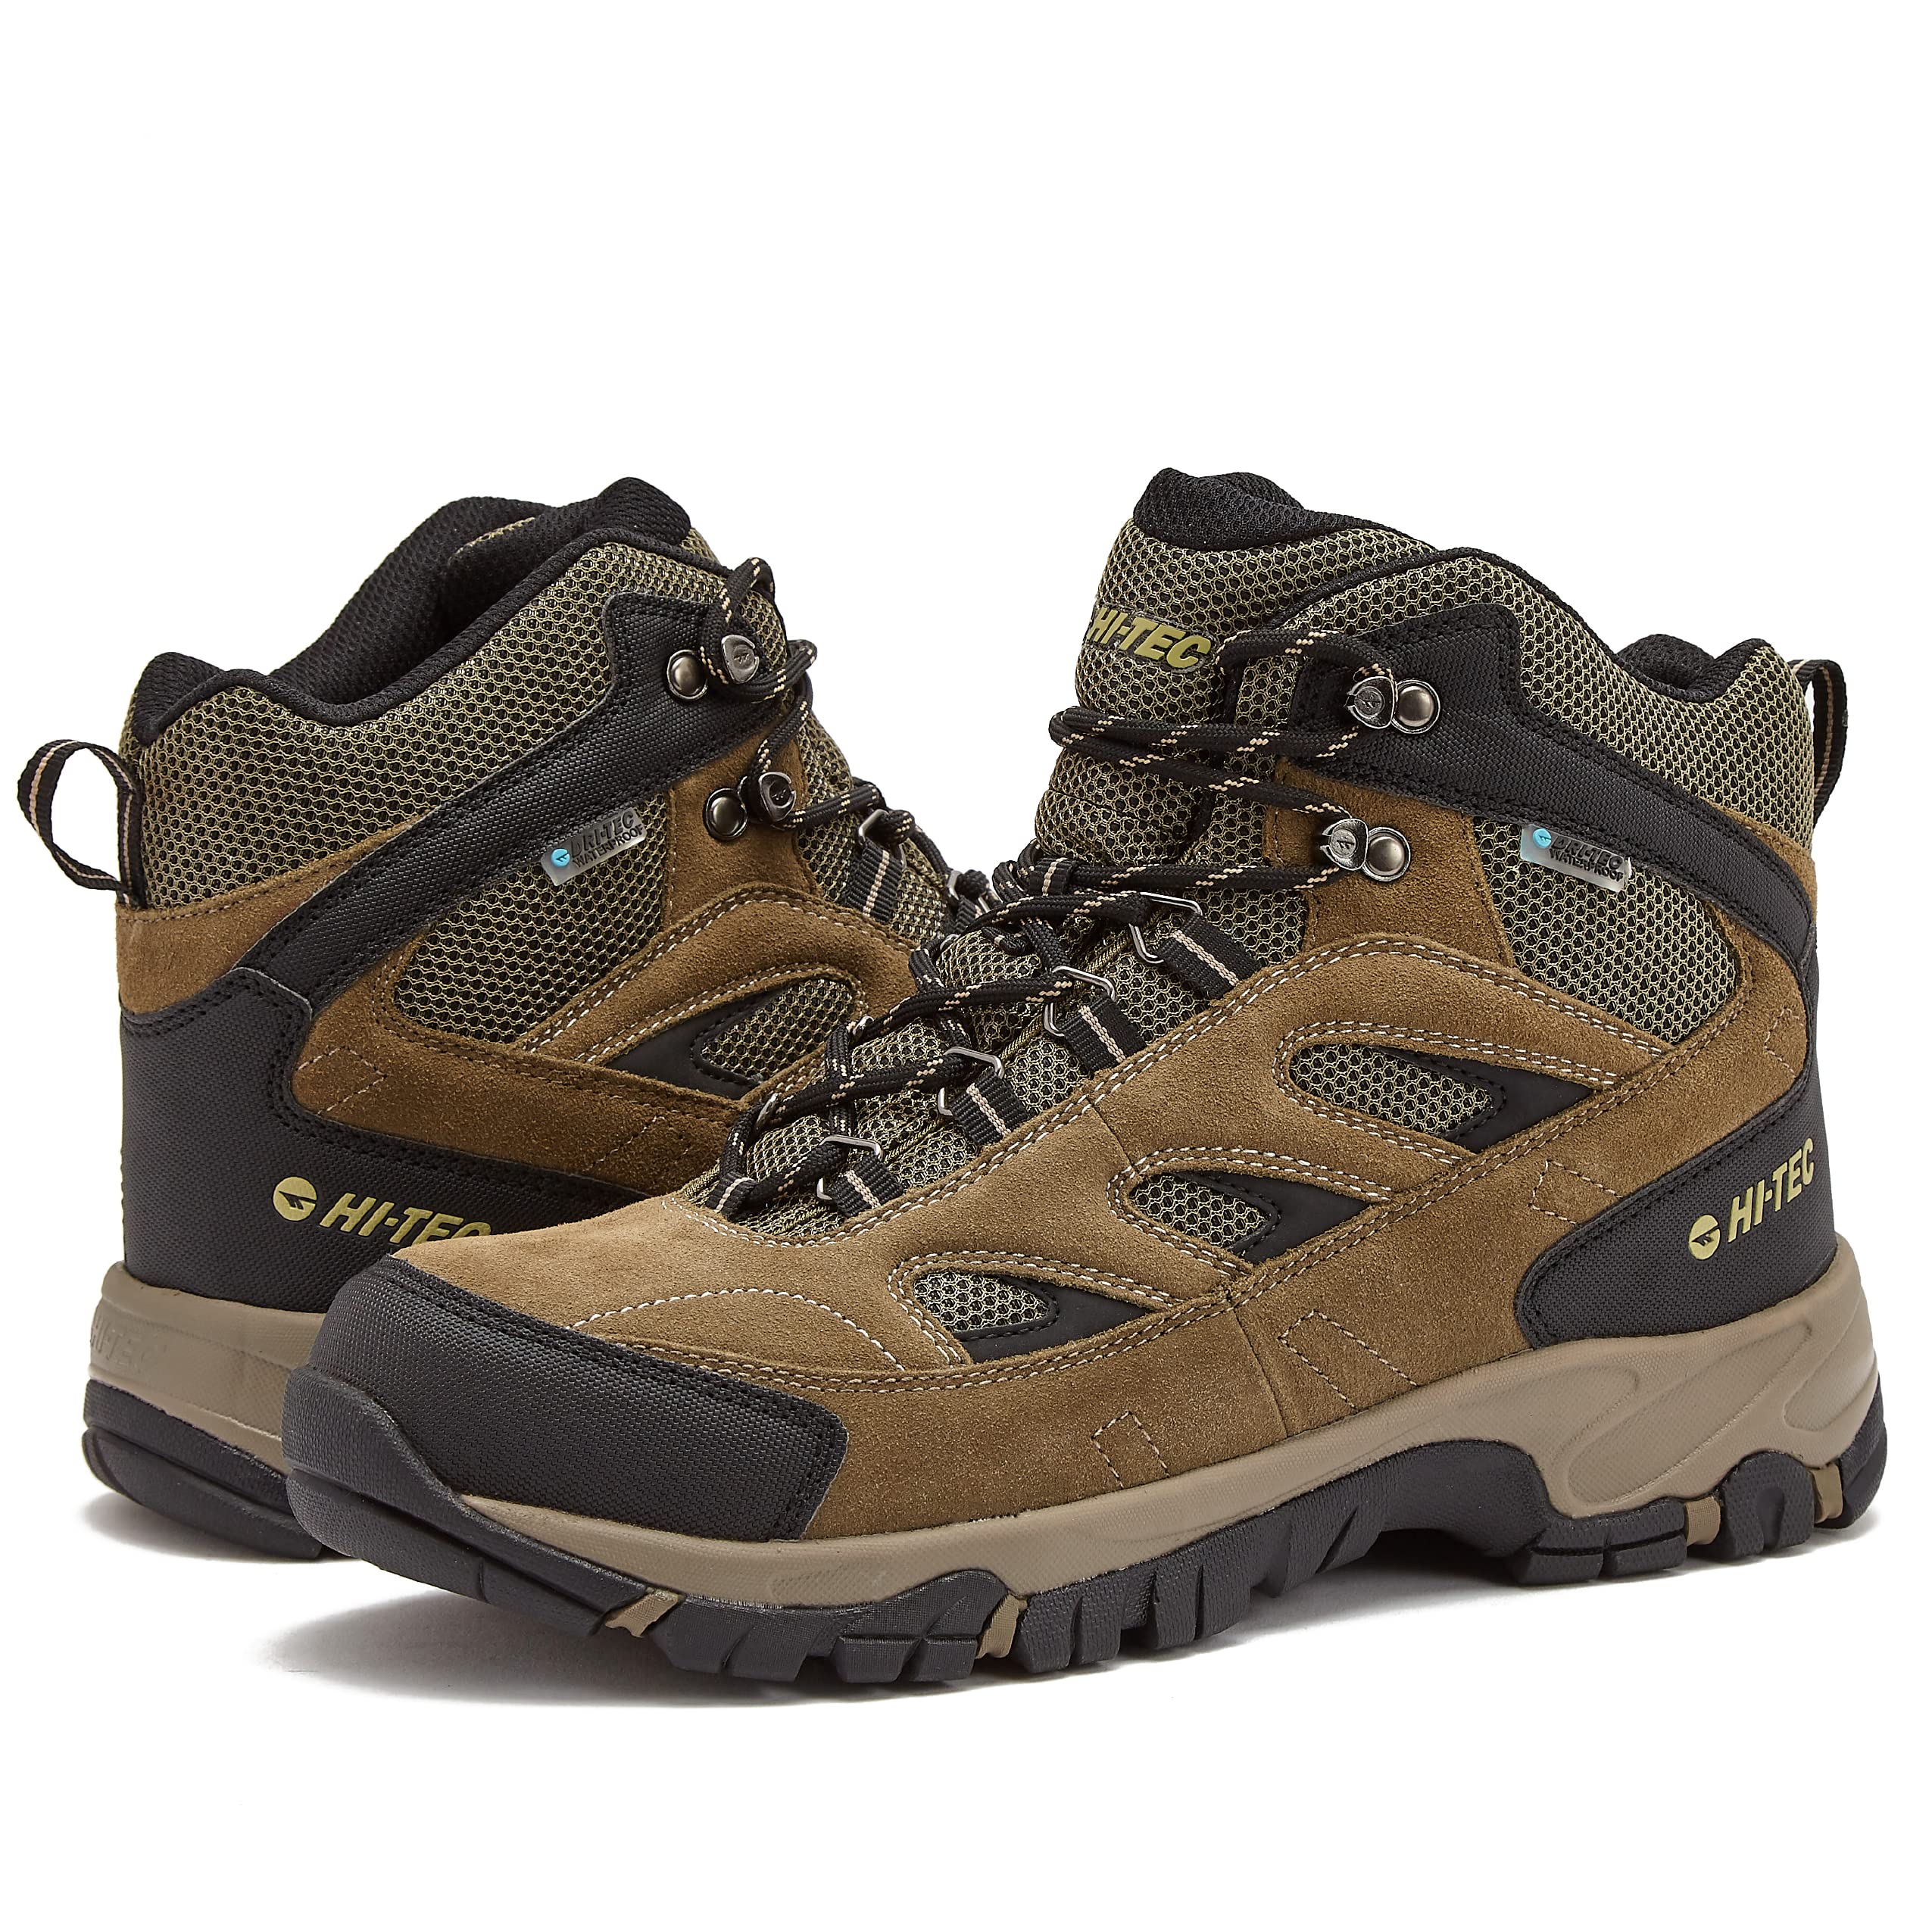 HI-TEC Ravus Mid Hiking Boots for Men